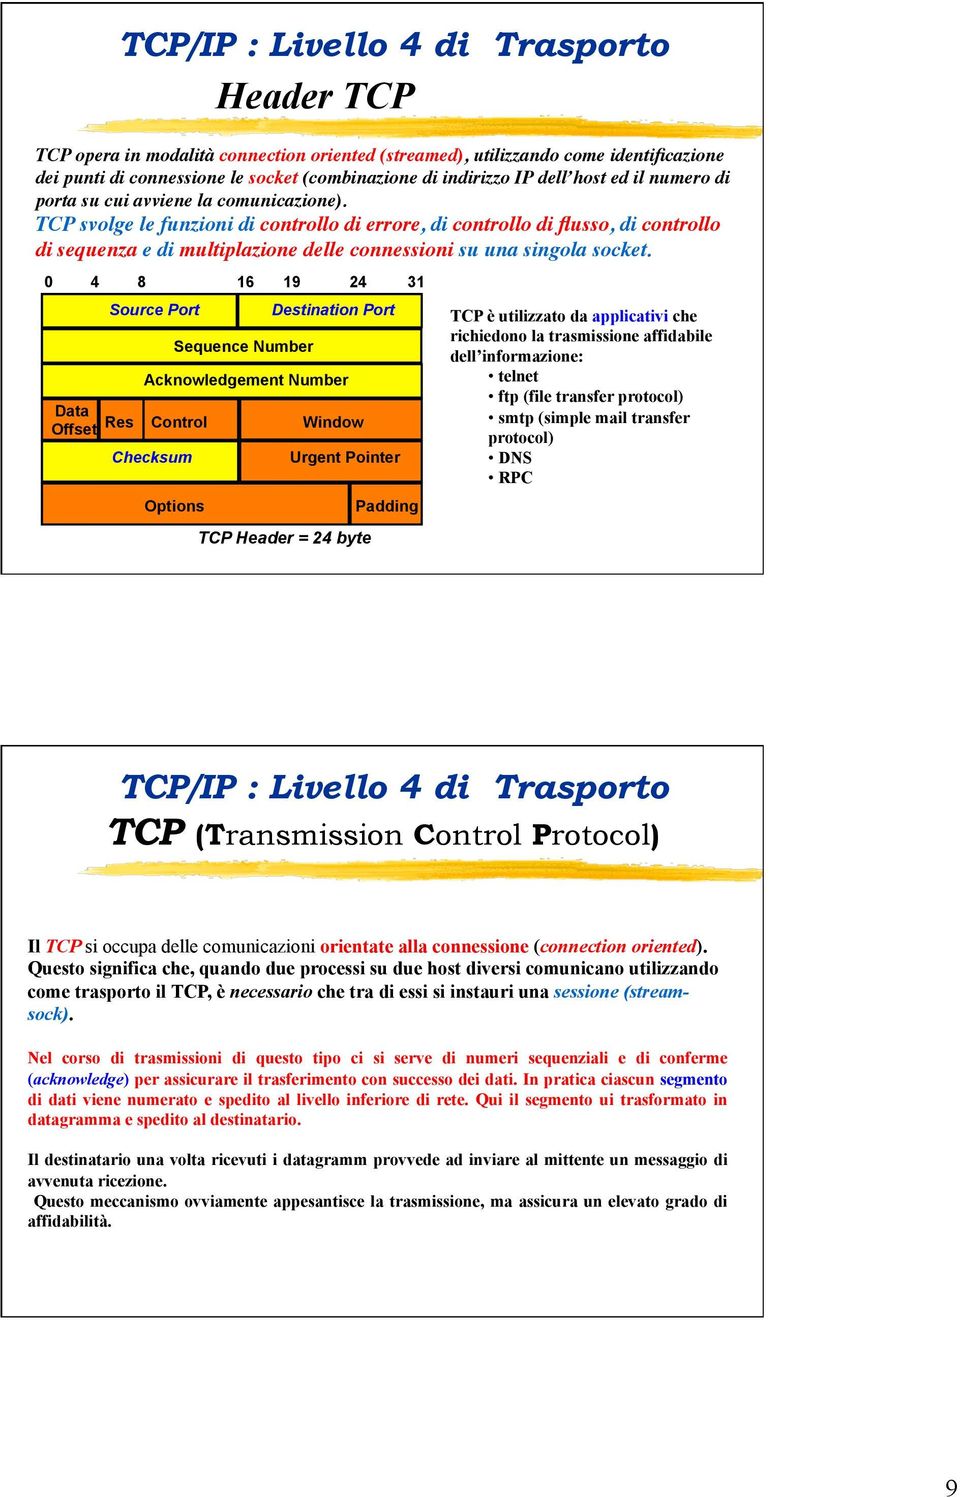 TCP svolge le funzioni di controllo di errore, di controllo di flusso, di controllo di sequenza e di multiplazione delle connessioni su una singola socket.